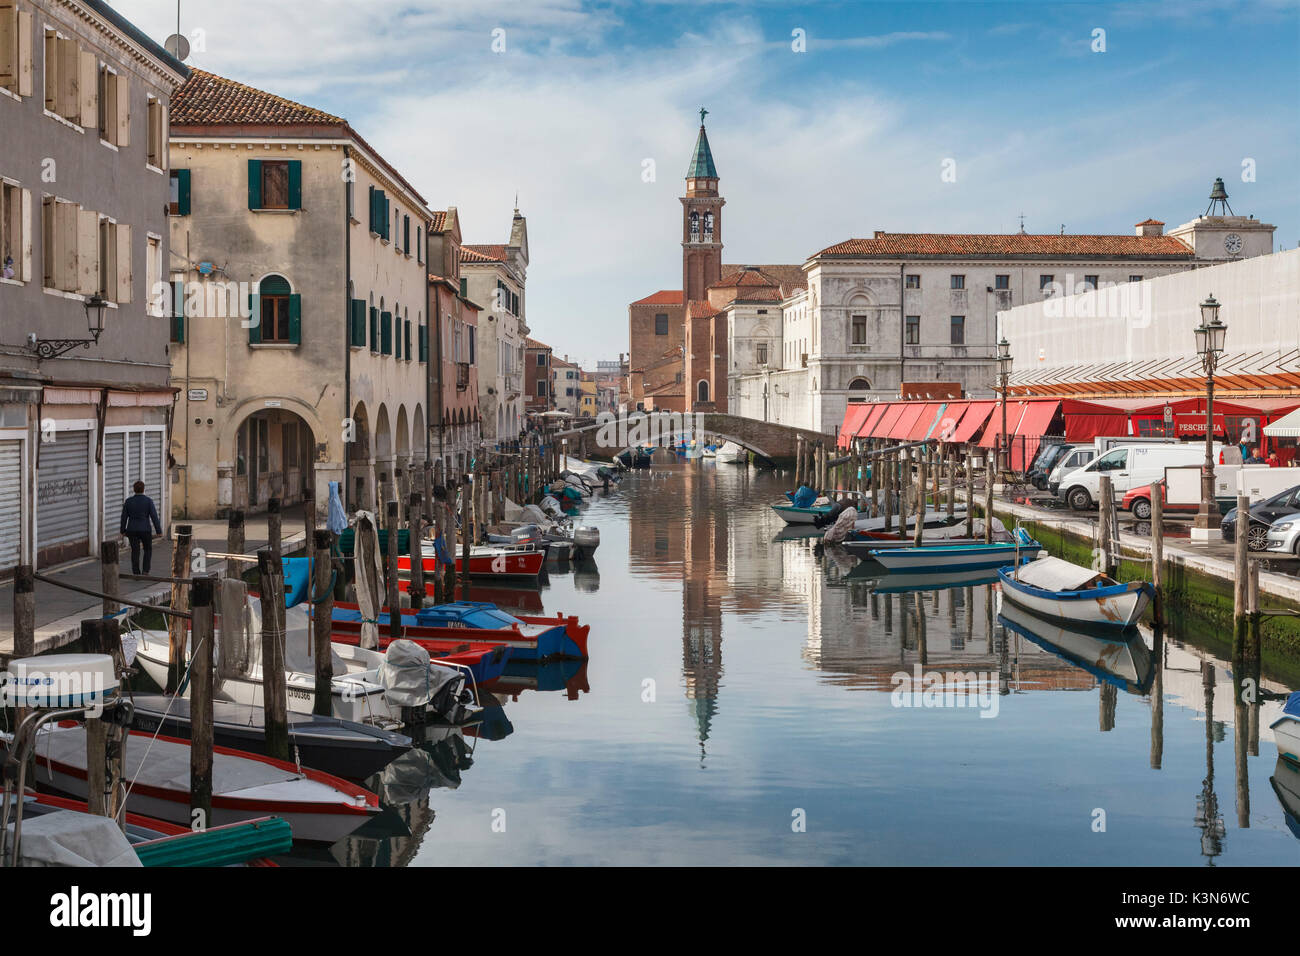 Europa, Italia, Veneto, Chioggia. Vista del Canal de la vena en el centro histórico de la ciudad Foto de stock